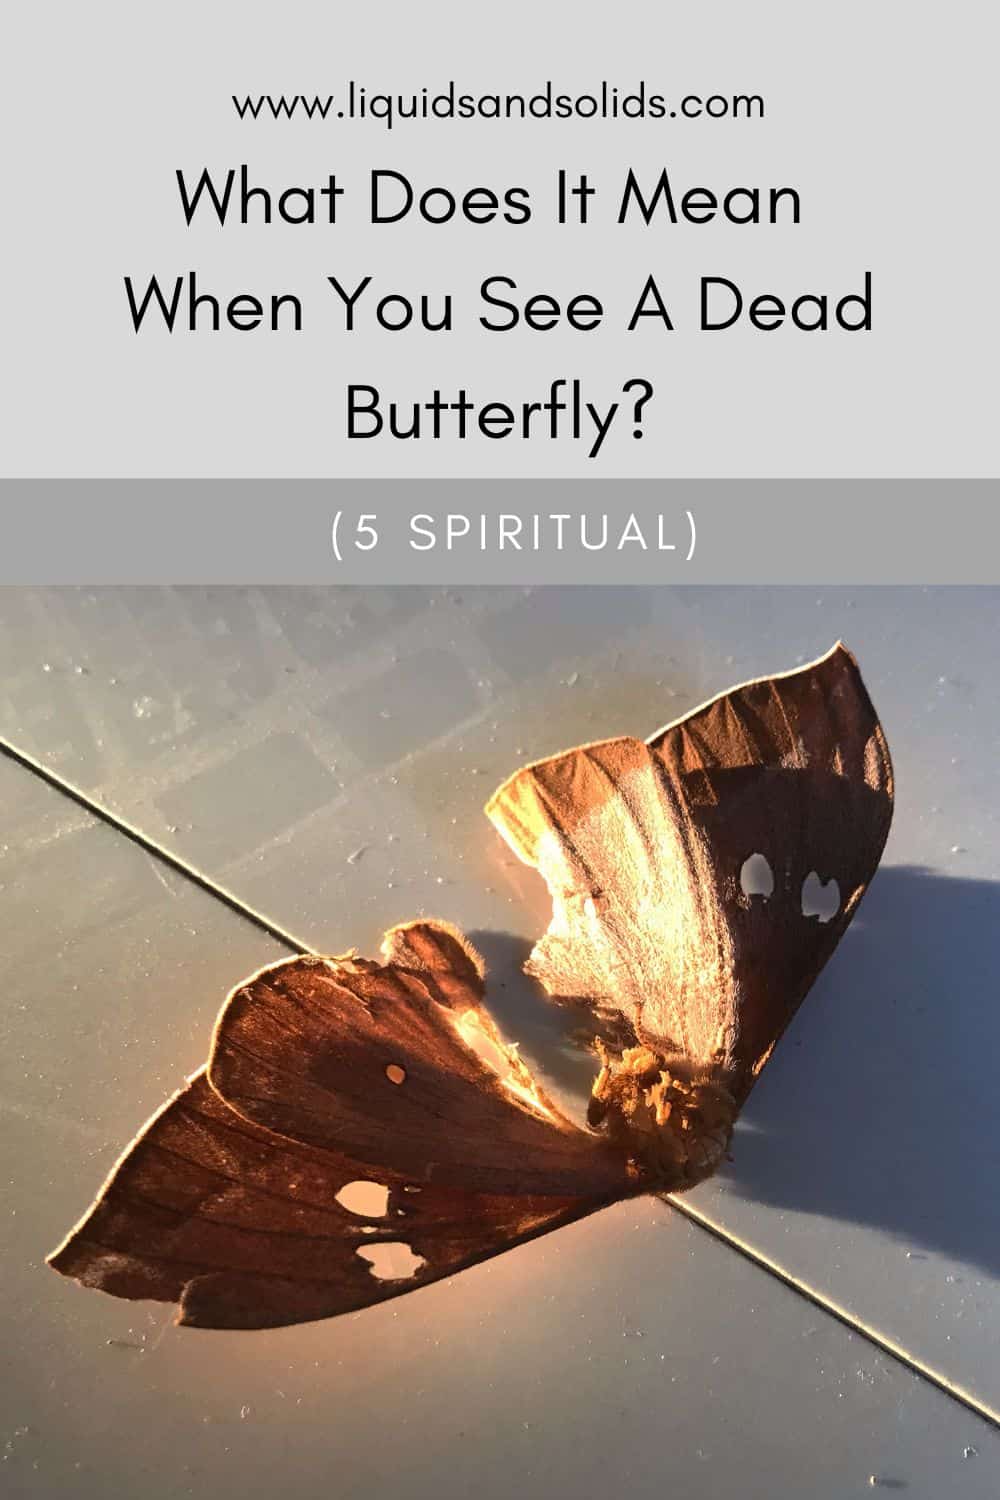  Mida tähendab see, kui sa näed surnud liblikat? (5 vaimset tähendust)